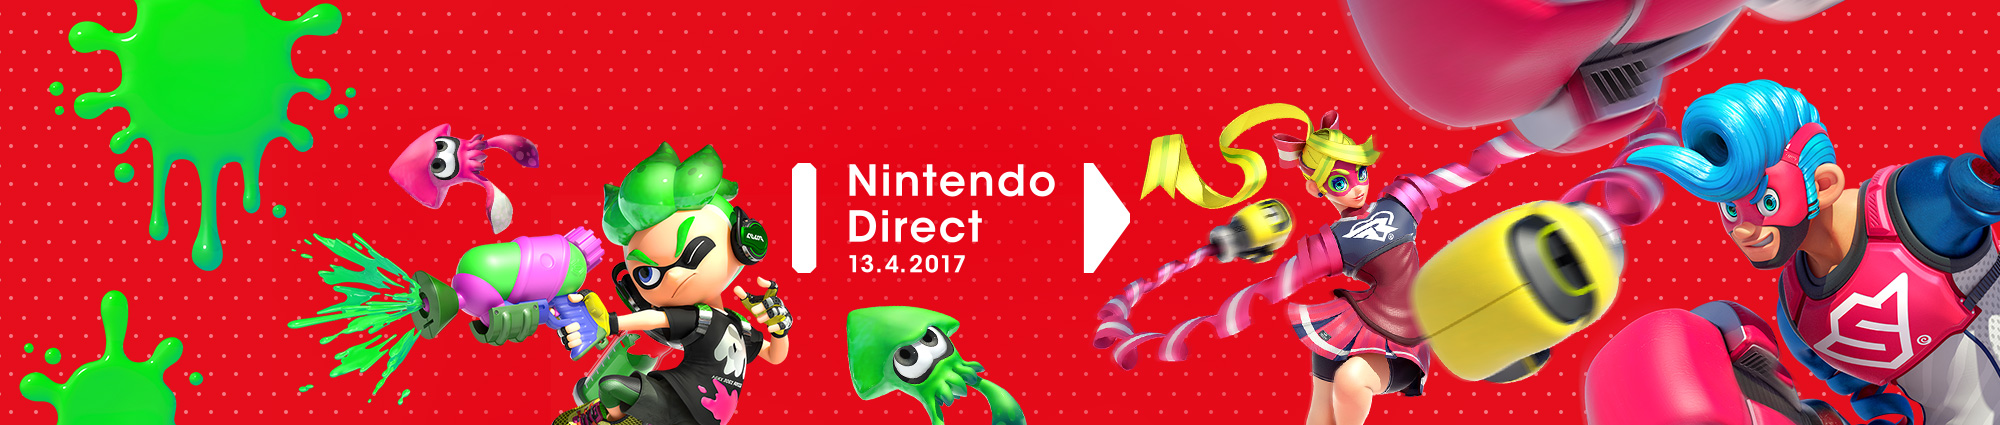 Nintendo Direct programmato per il 13 Aprile